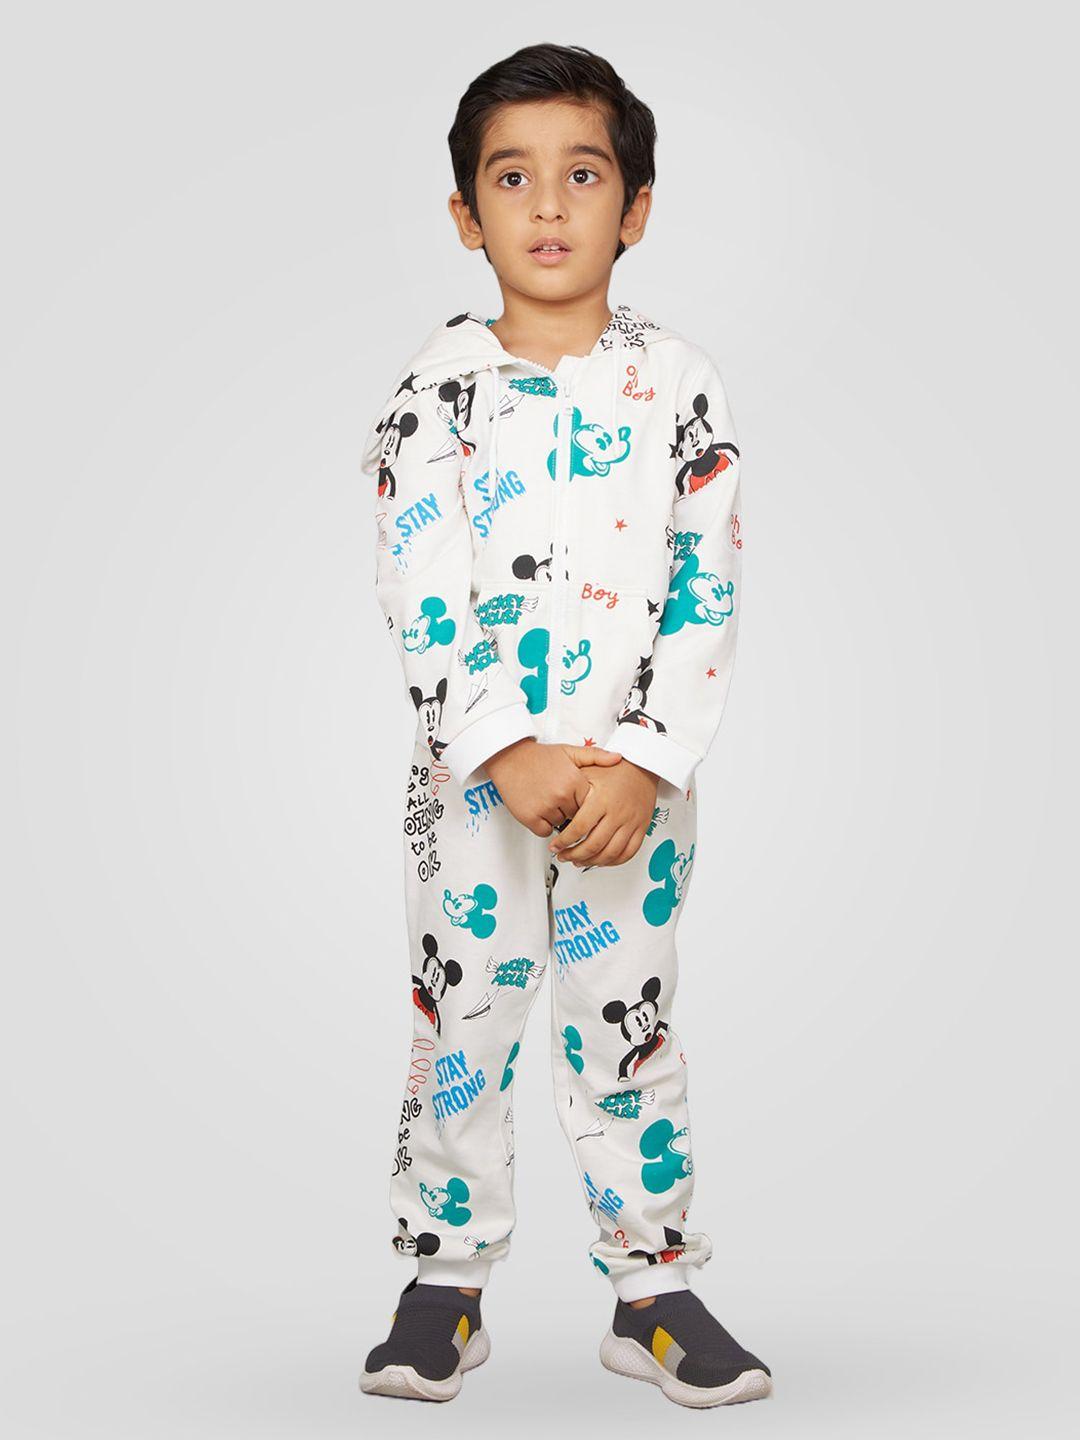 zalio boys white & blue printed top with pyjamas